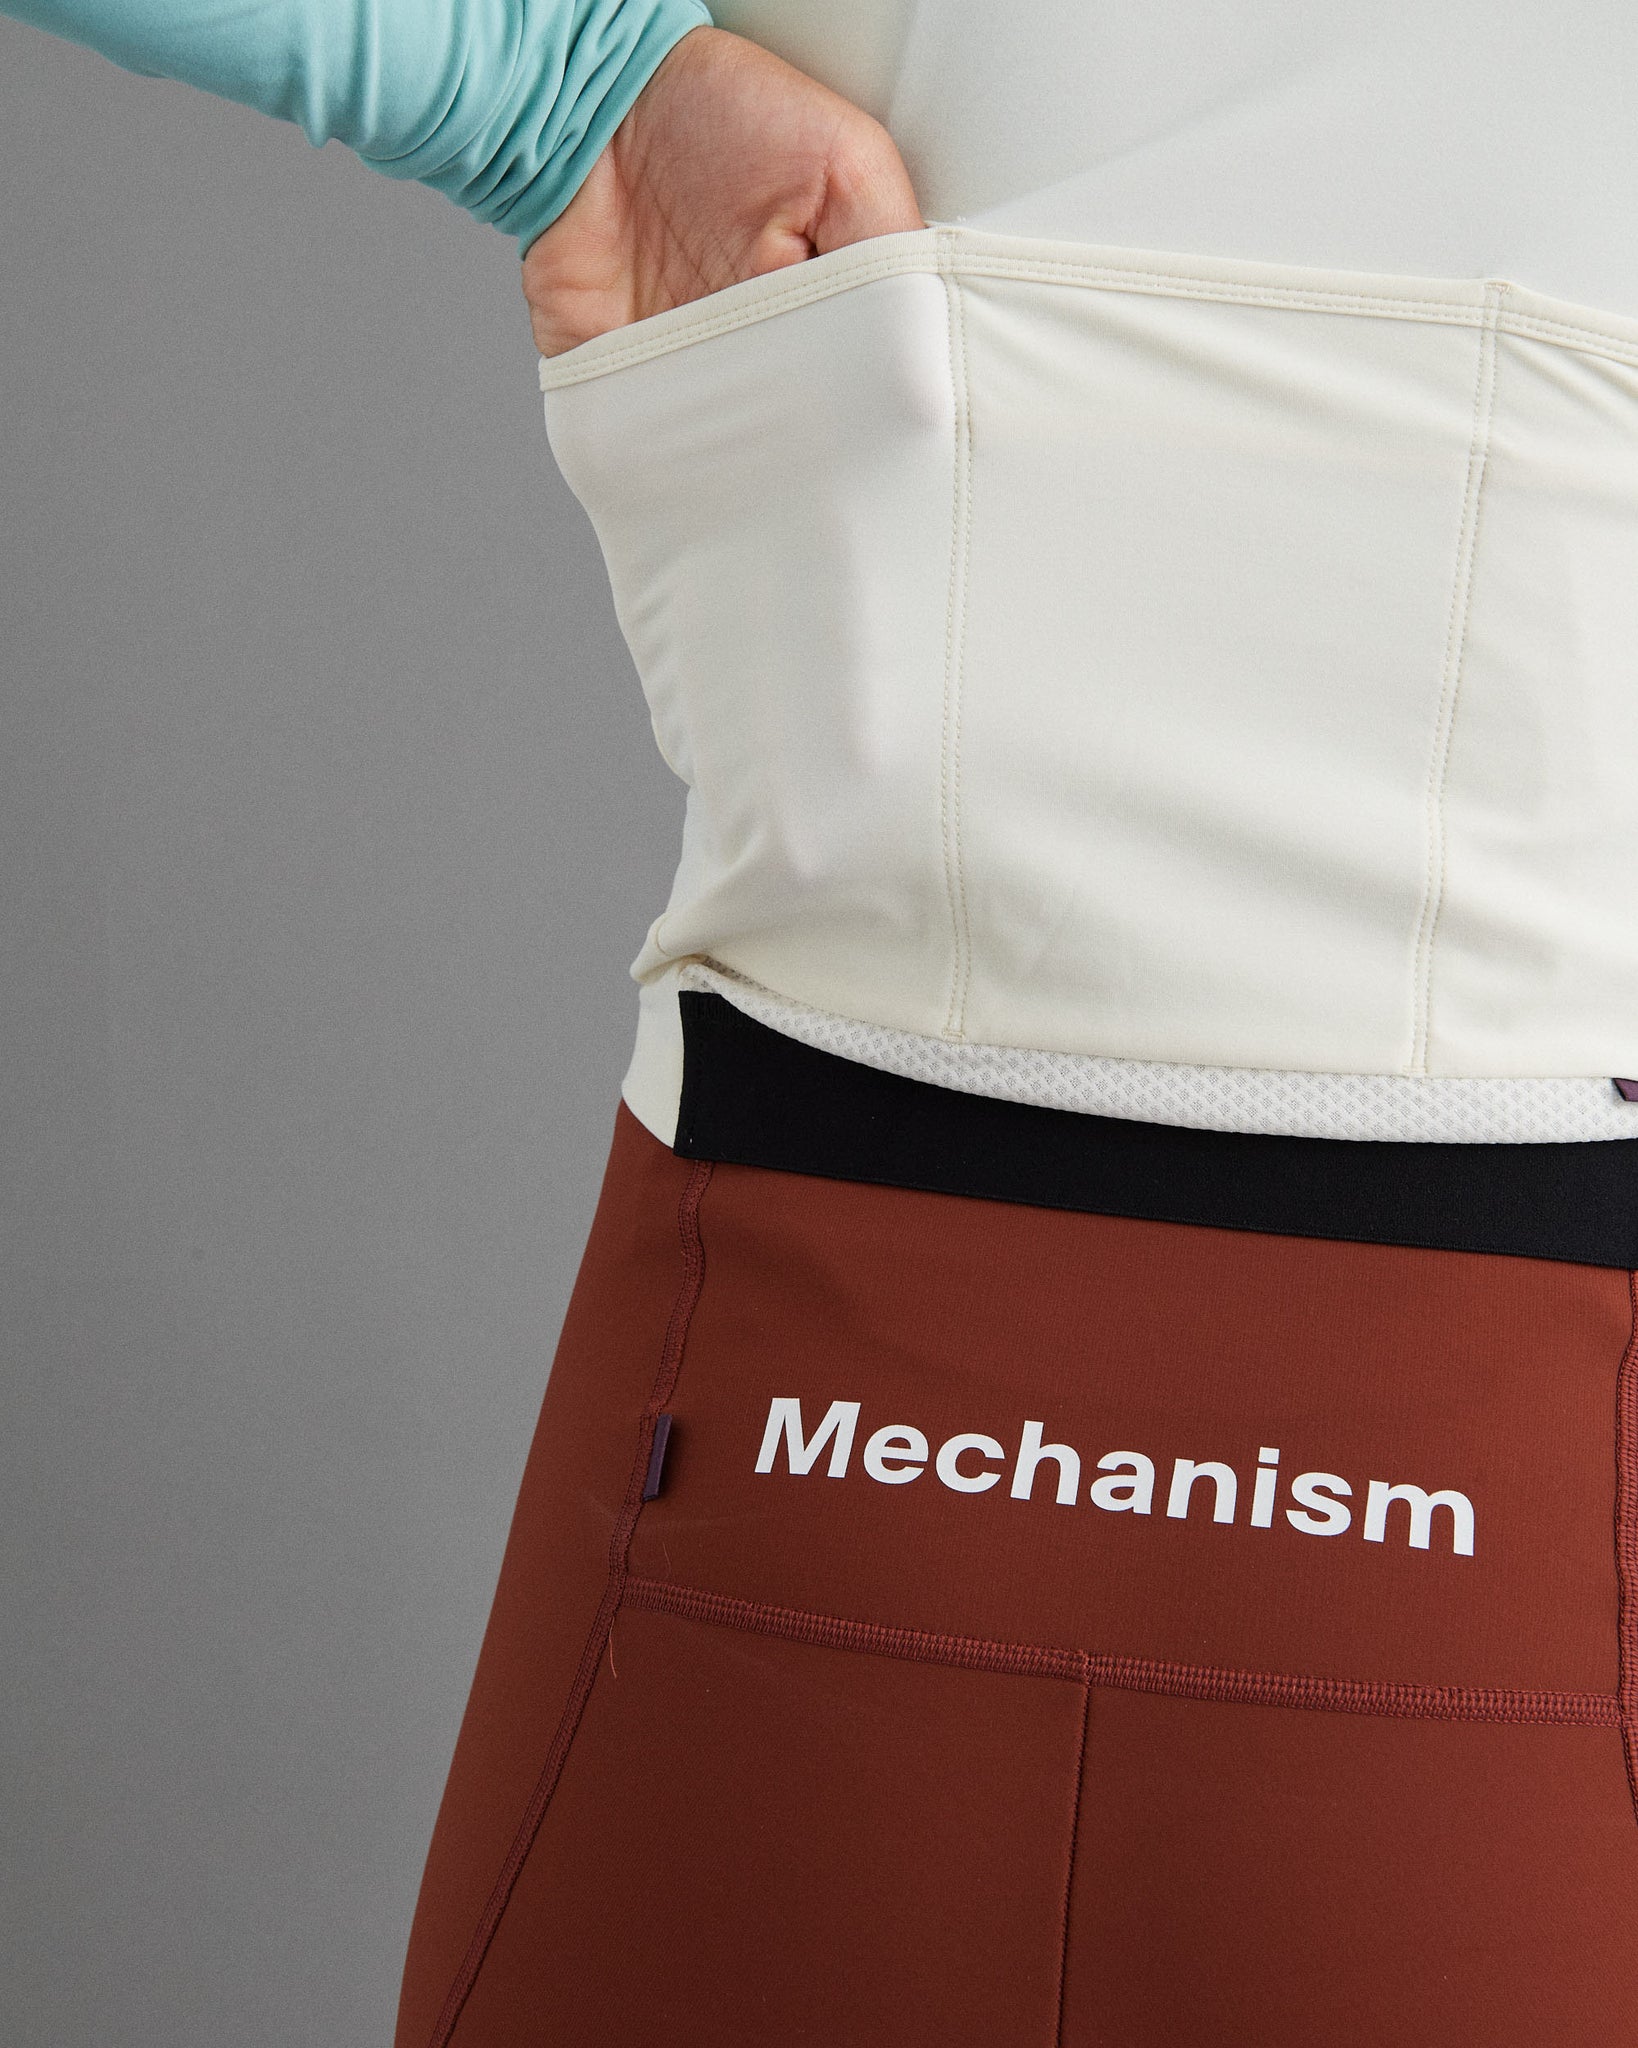 Women's Mechanism Long Sleeve Jersey - Off White Light Teal